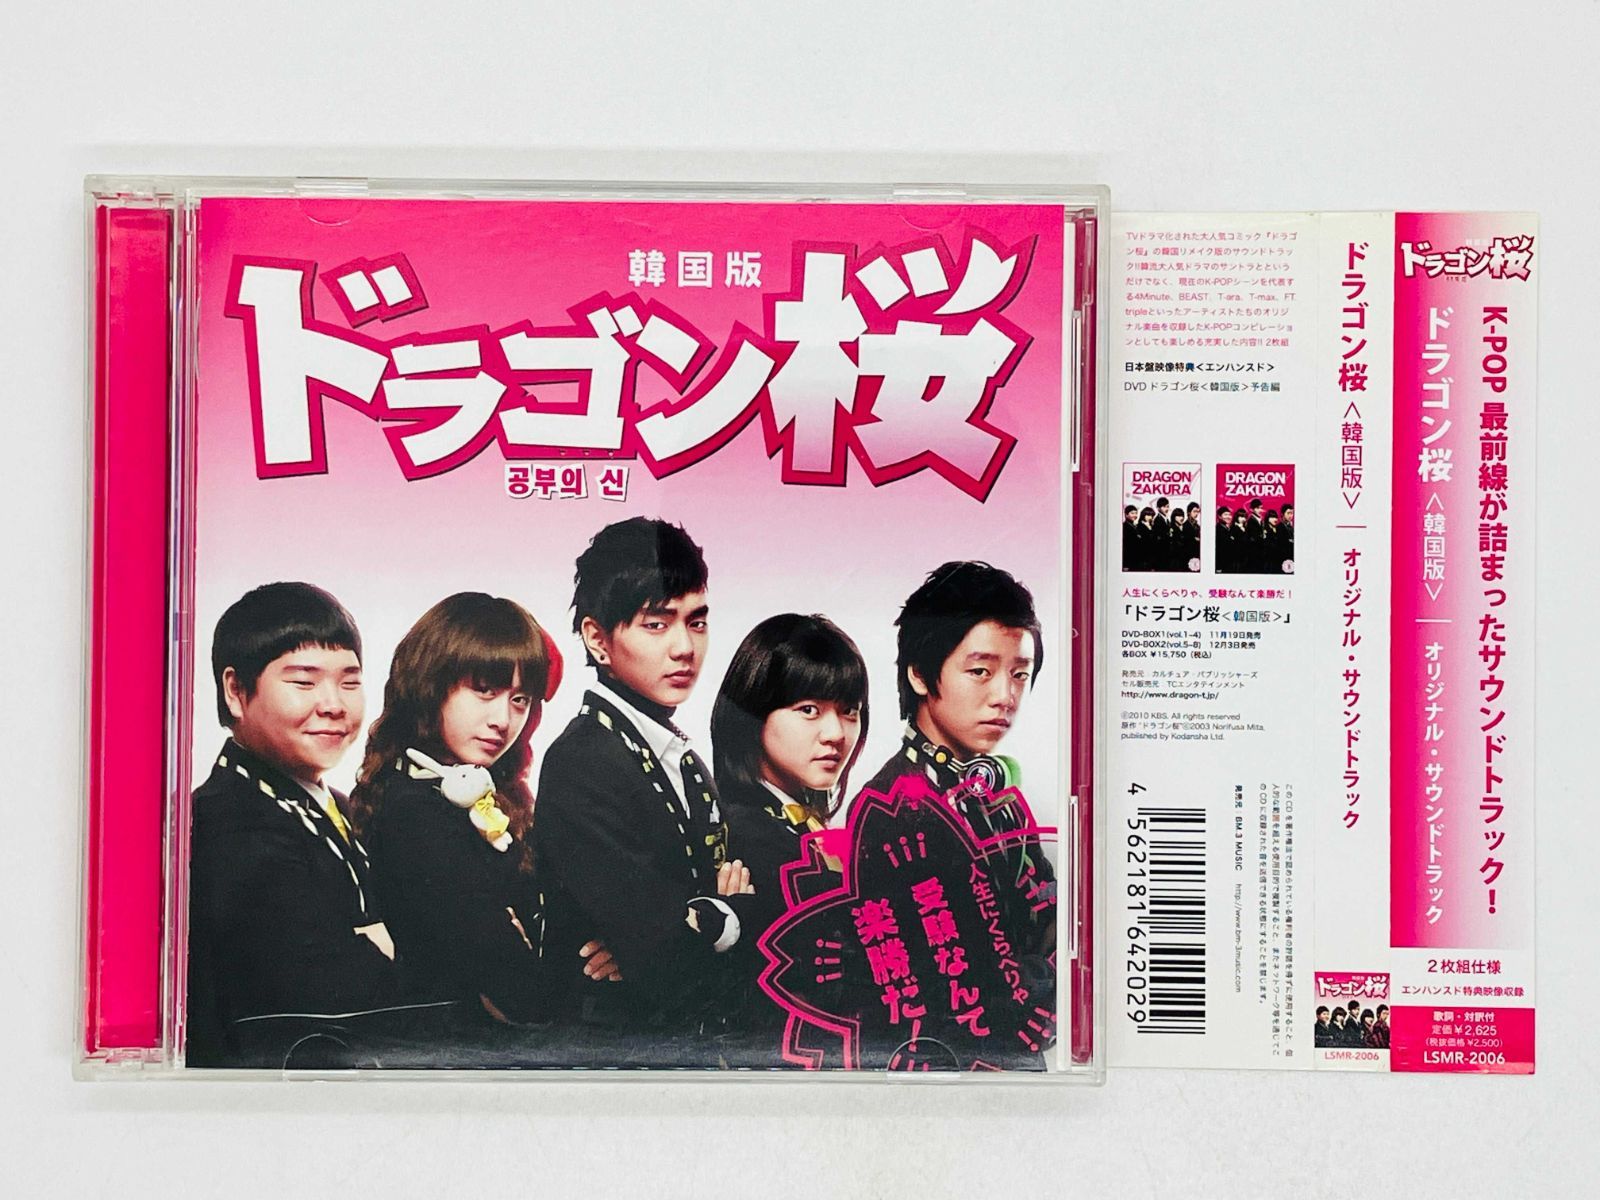 2CD ドラゴン桜 韓国版 / オリジナル・サウンドトラック / 帯付き LSMR-2006 Y02 - メルカリ